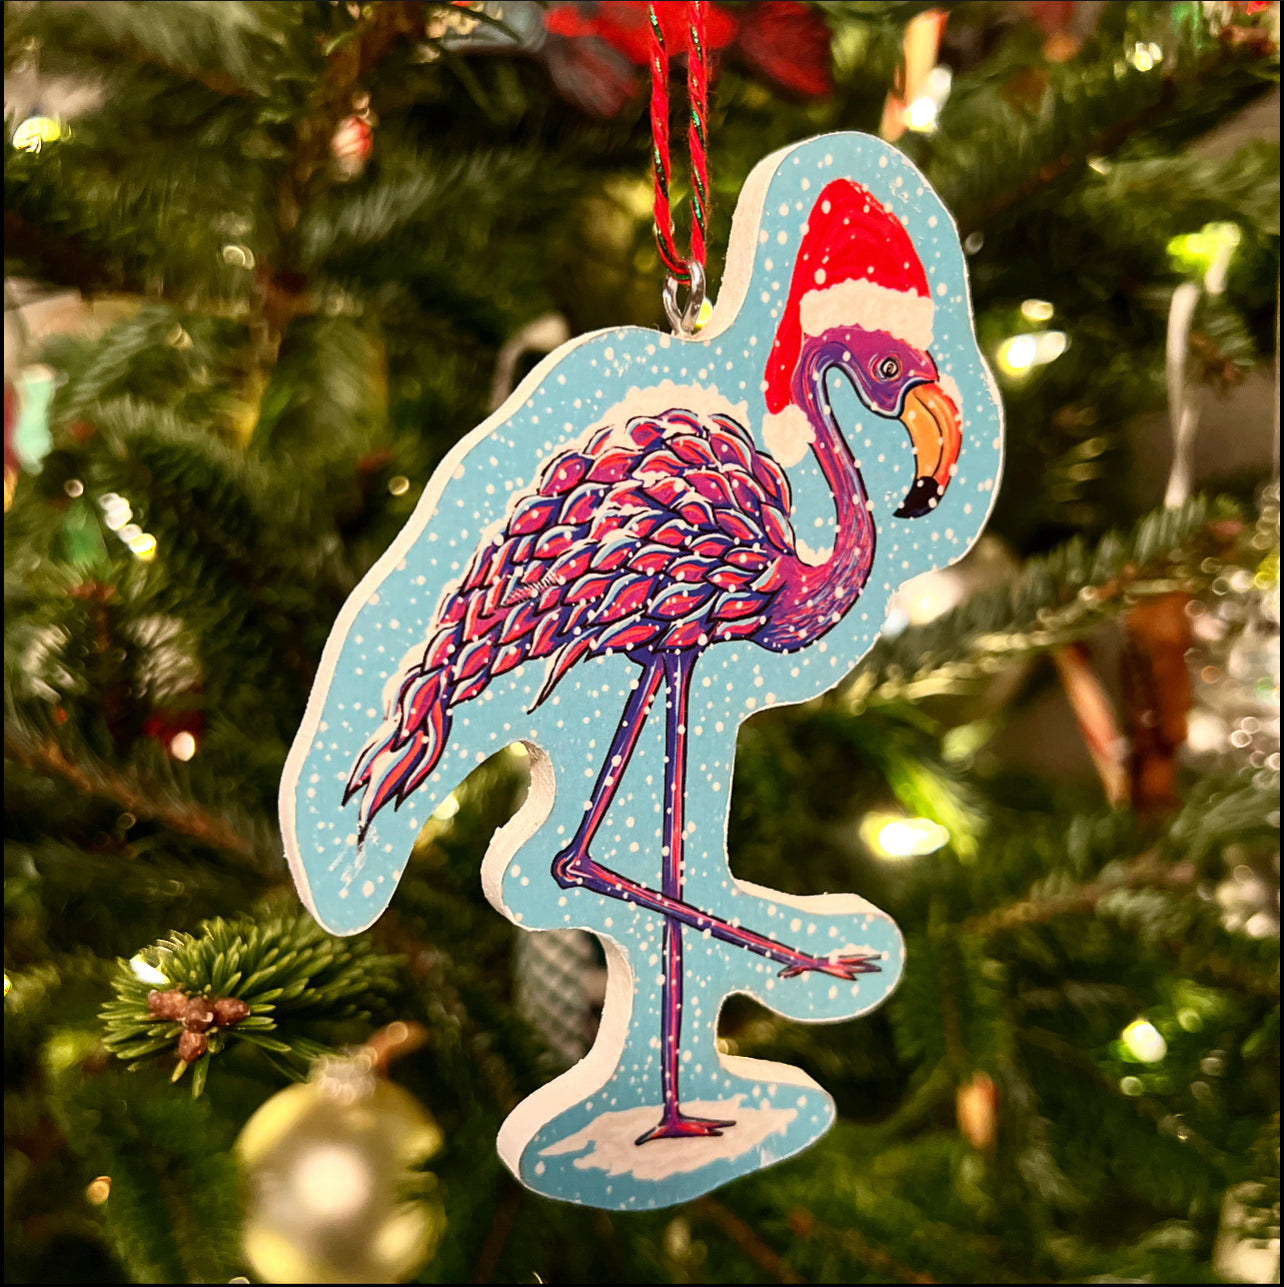 Snow Flamingo 2021 Ornament - Daniel Curran Art